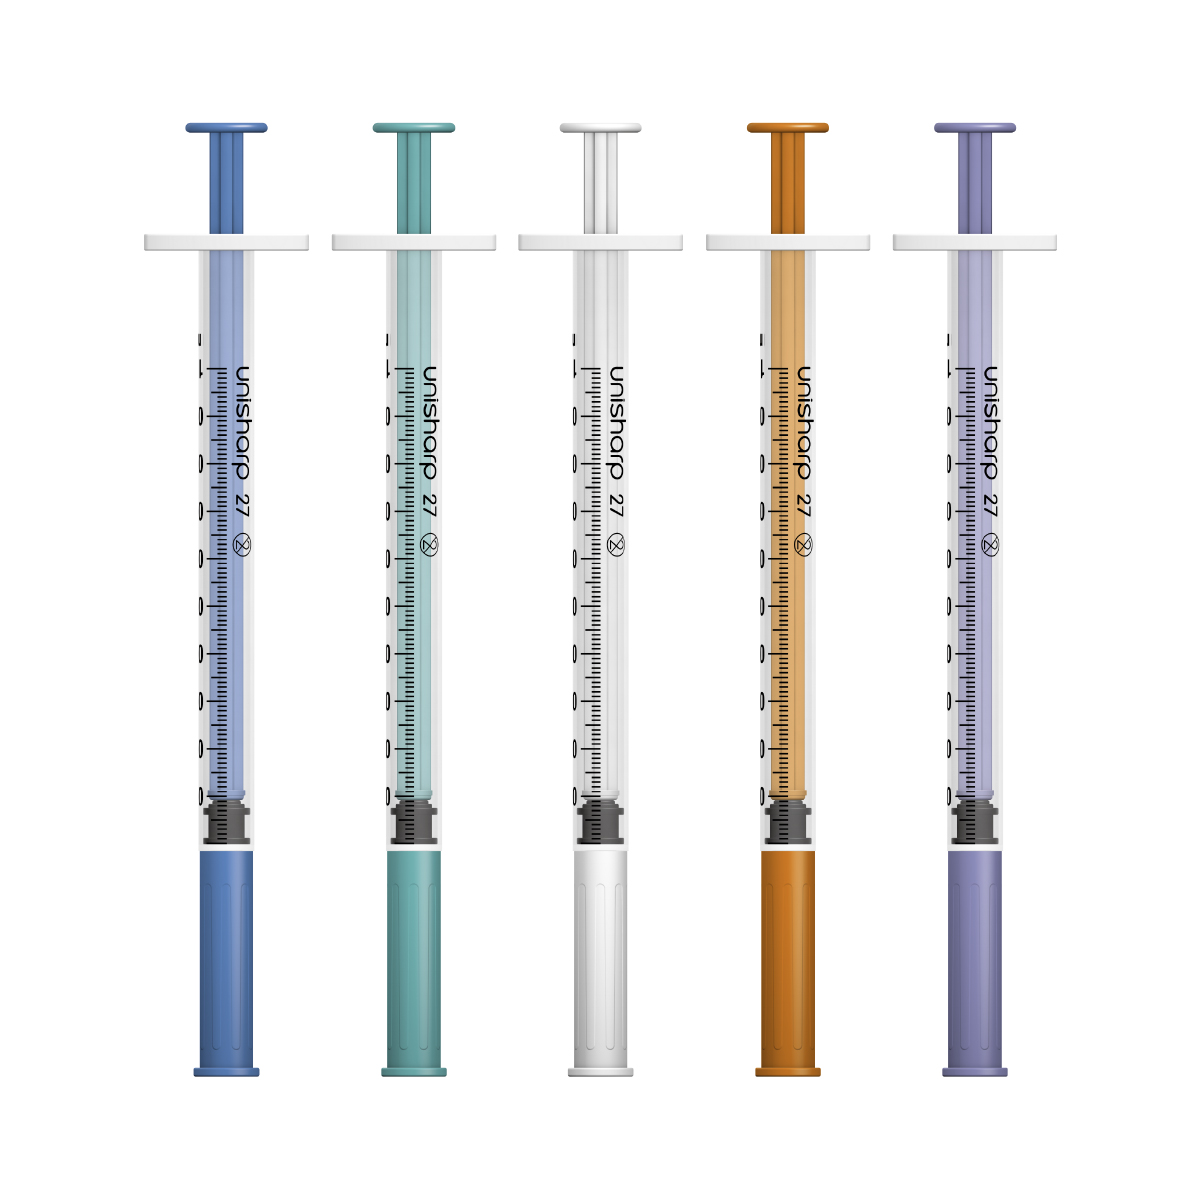 Unisharp 1ml 27G fixed needle syringe: mixed colours